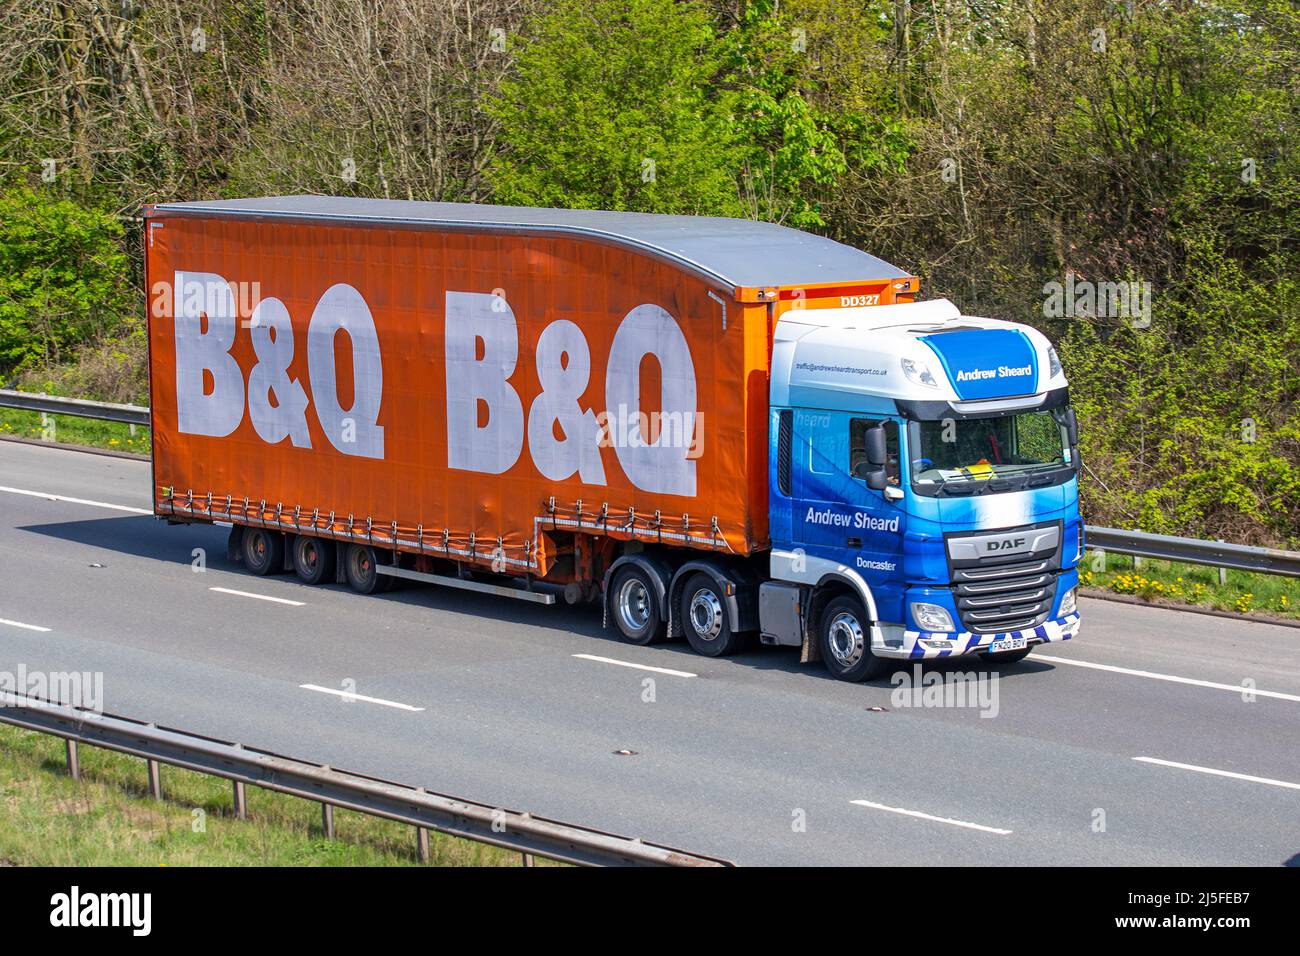 Andrew Sheard Doncaster ; magasin de bricolage B&Q, B & Q DAF Trucks ; conduite sur l'autoroute M61, Royaume-Uni Banque D'Images